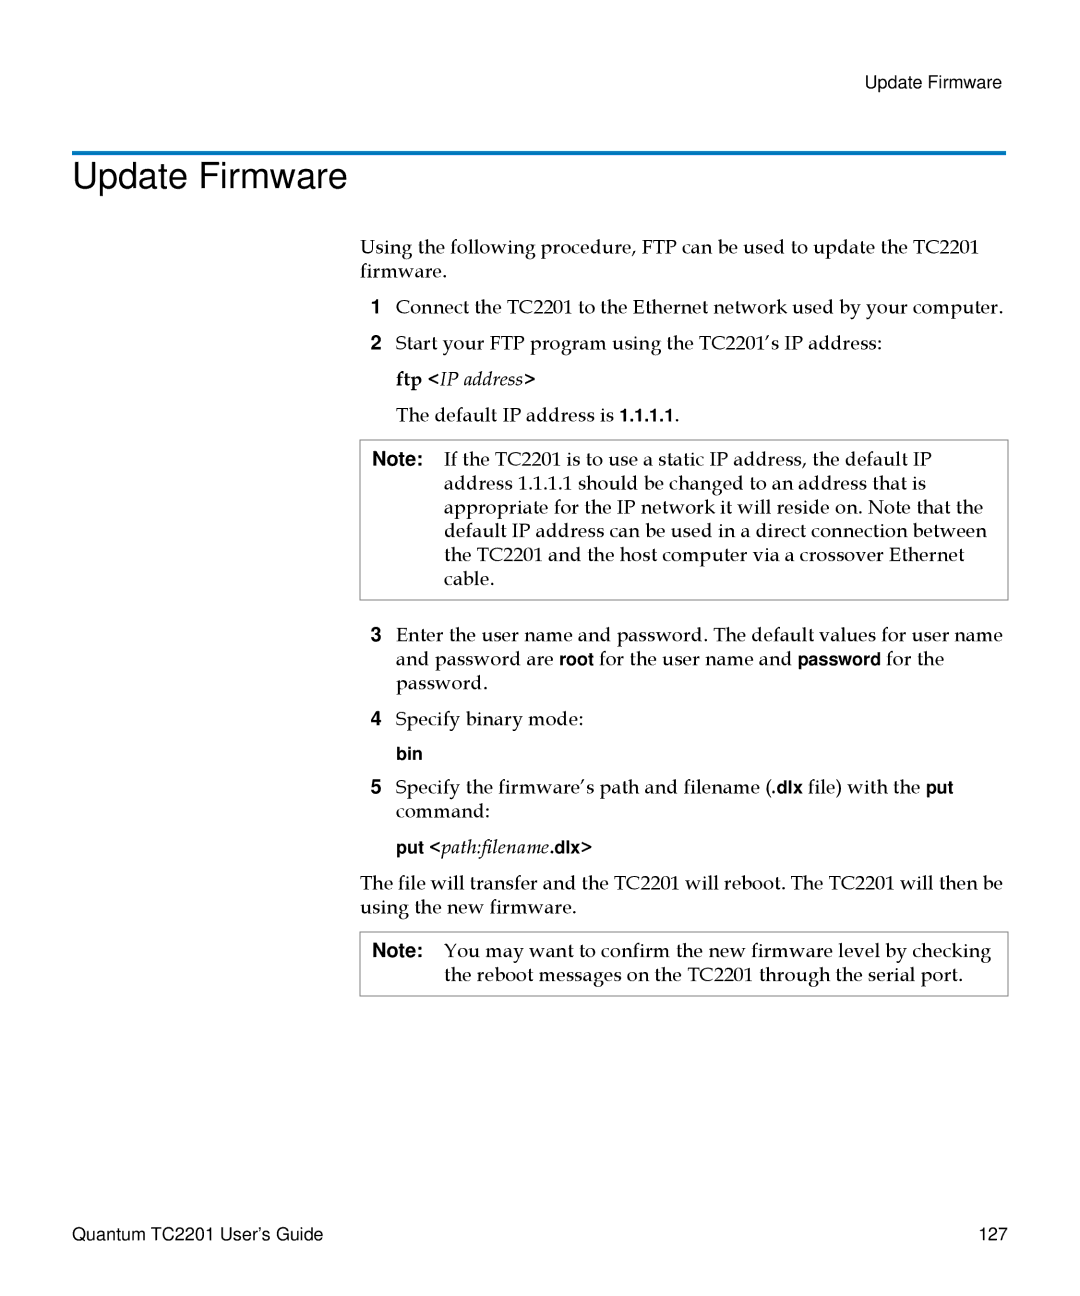 Quantum TC2201 manual Update Firmware, Put pathfilename.dlx 